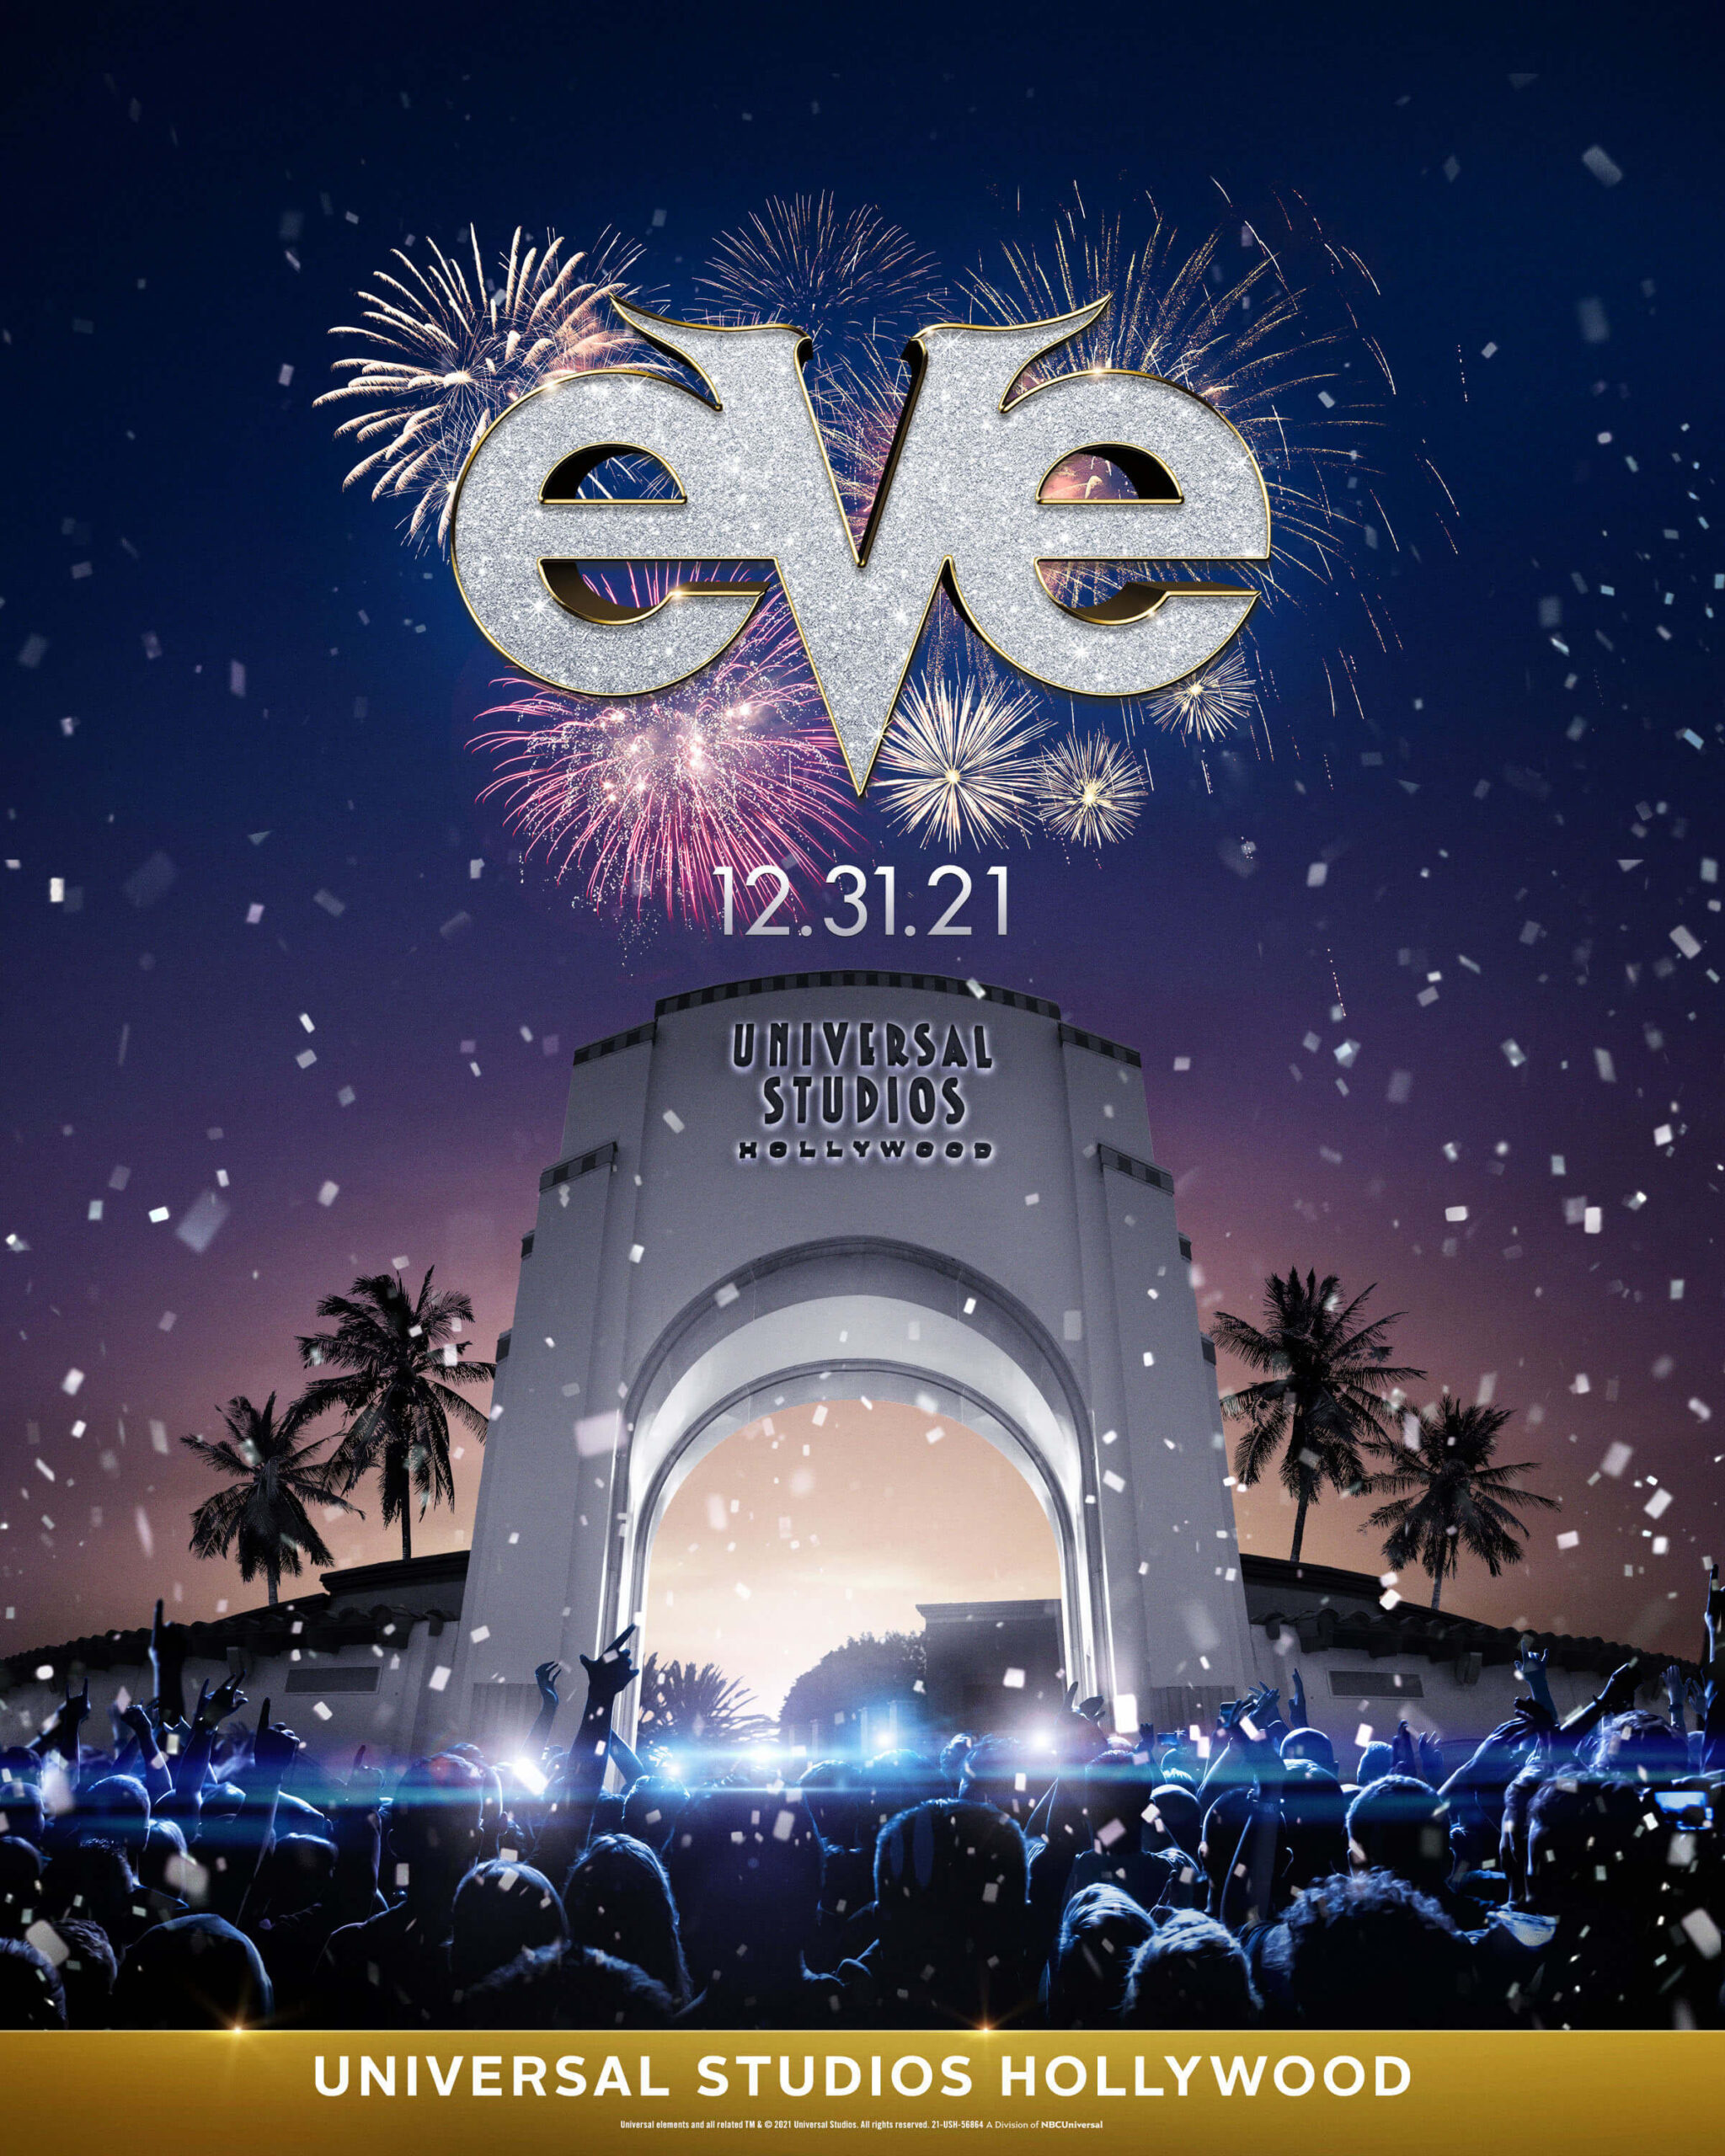 好萊塢環球影城“EVE”盛大新年除夕慶祝活動——現場娛樂、煙花和遊樂設施和景點遊覽